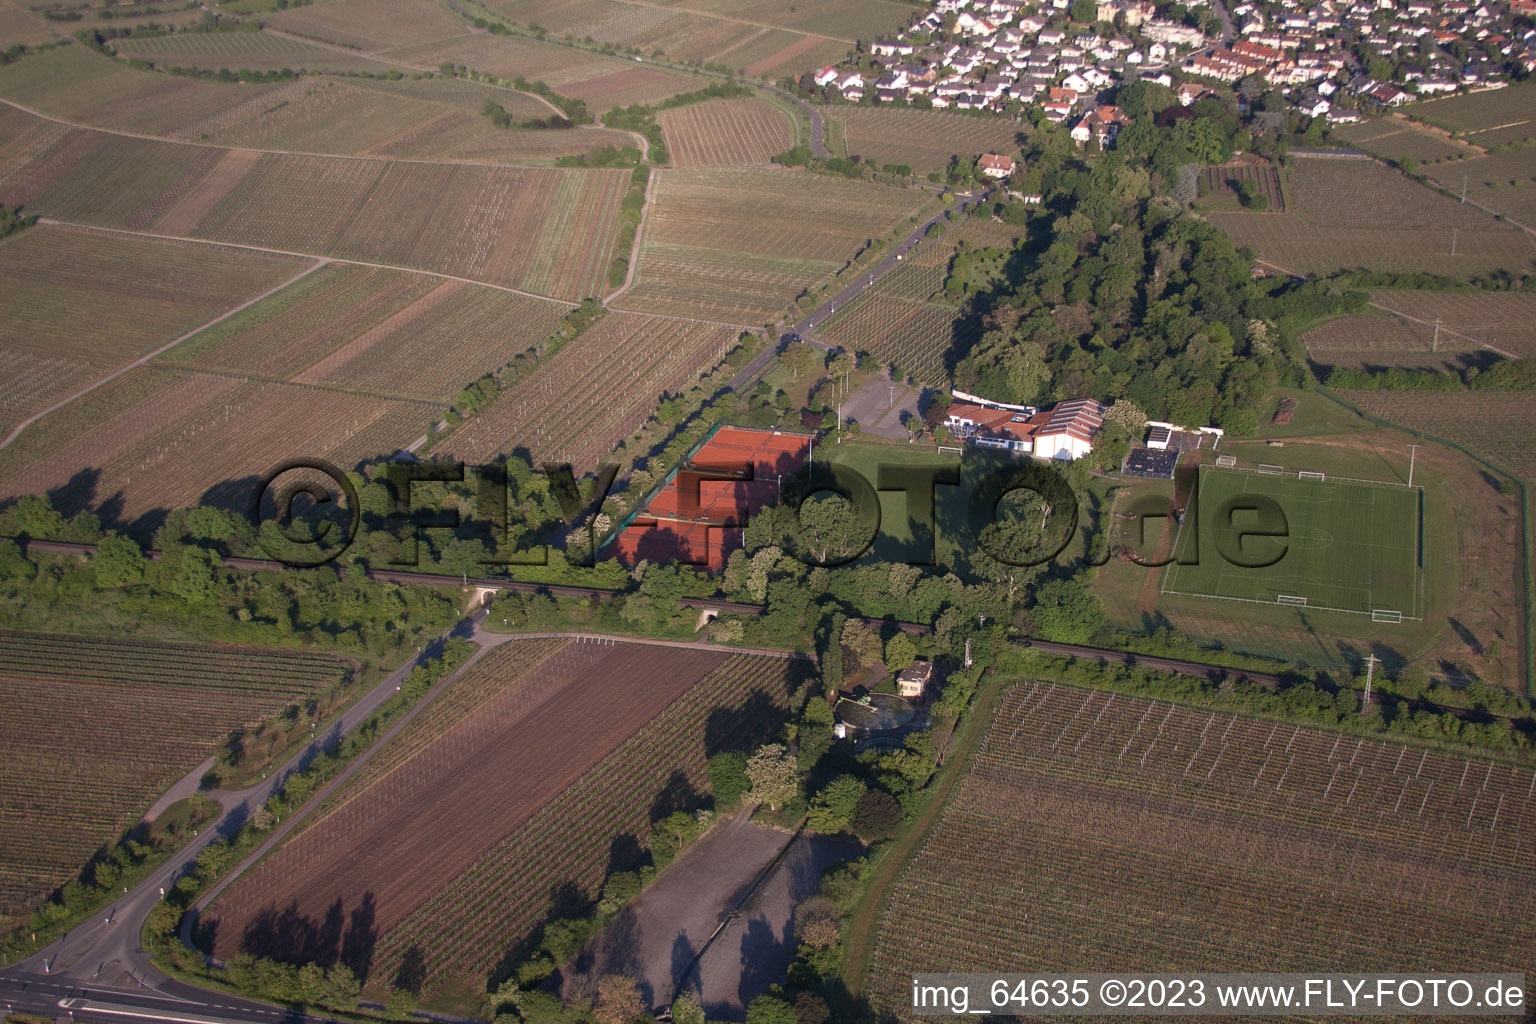 Vue aérienne de Centre sportif, communauté de tennis Hildebrandseck THG à le quartier Königsbach in Neustadt an der Weinstraße dans le département Rhénanie-Palatinat, Allemagne